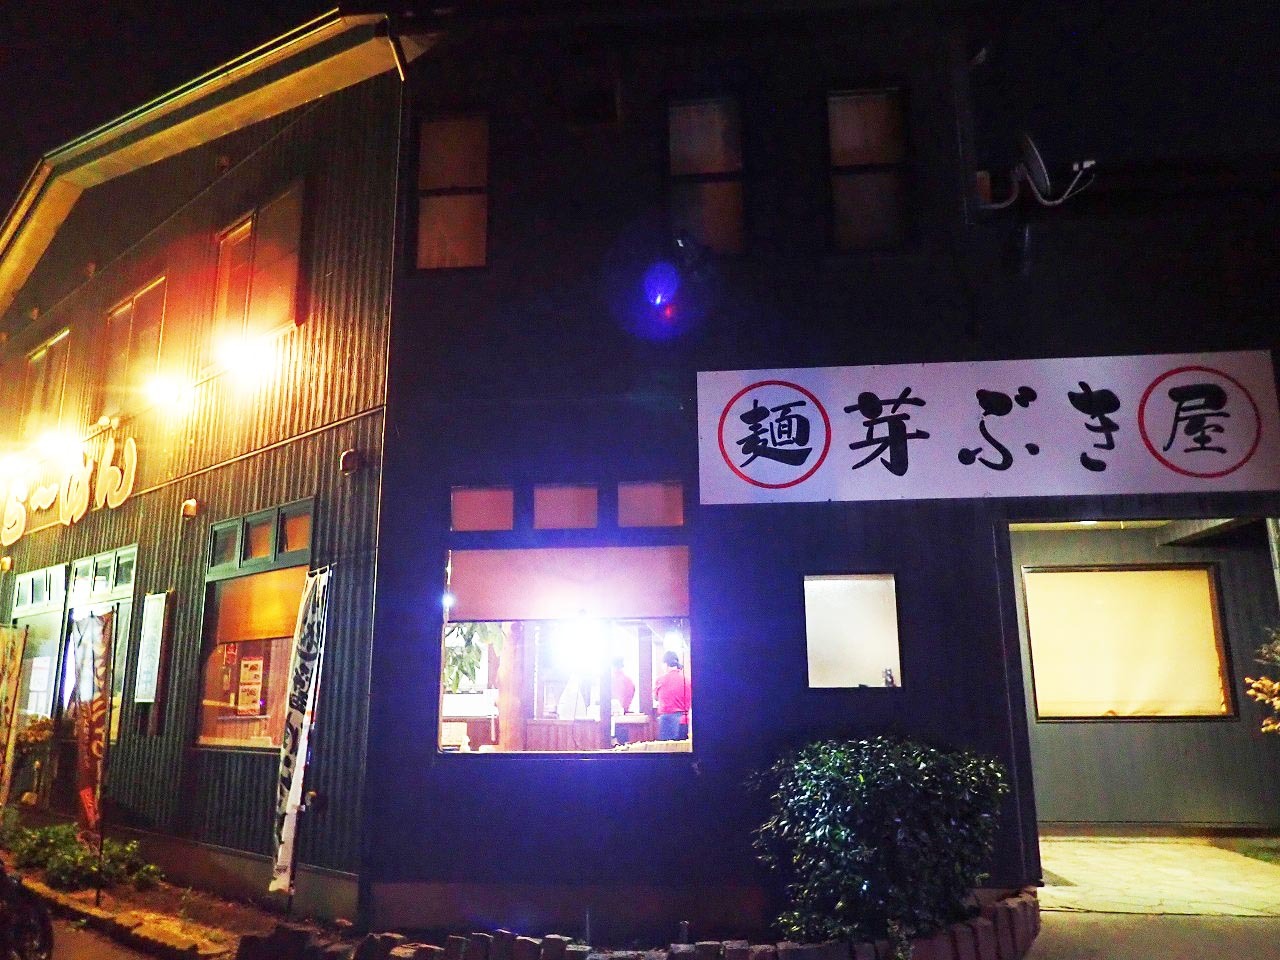 「麺屋芽ぶき」は住所でいうと川越市川越市下赤坂にあります